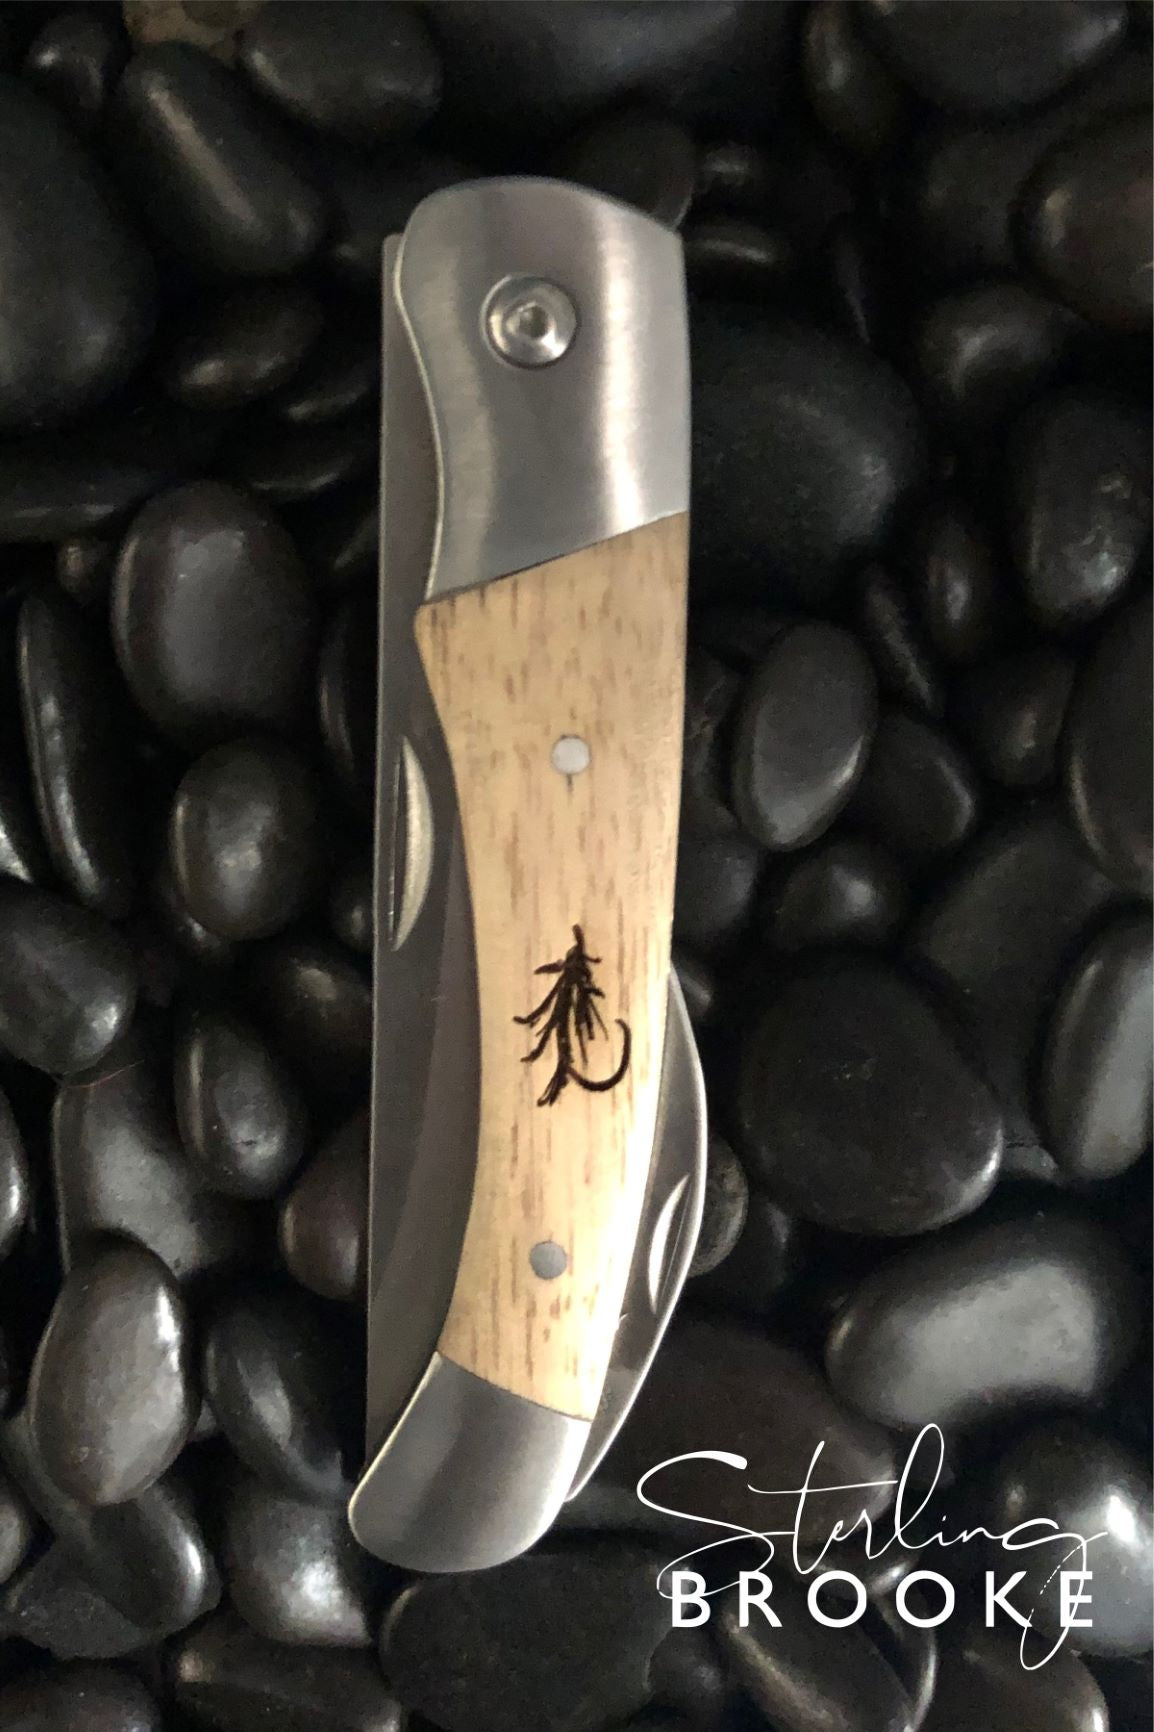 Coastal Large Pocket Knife  Scales – Sterling Brooke